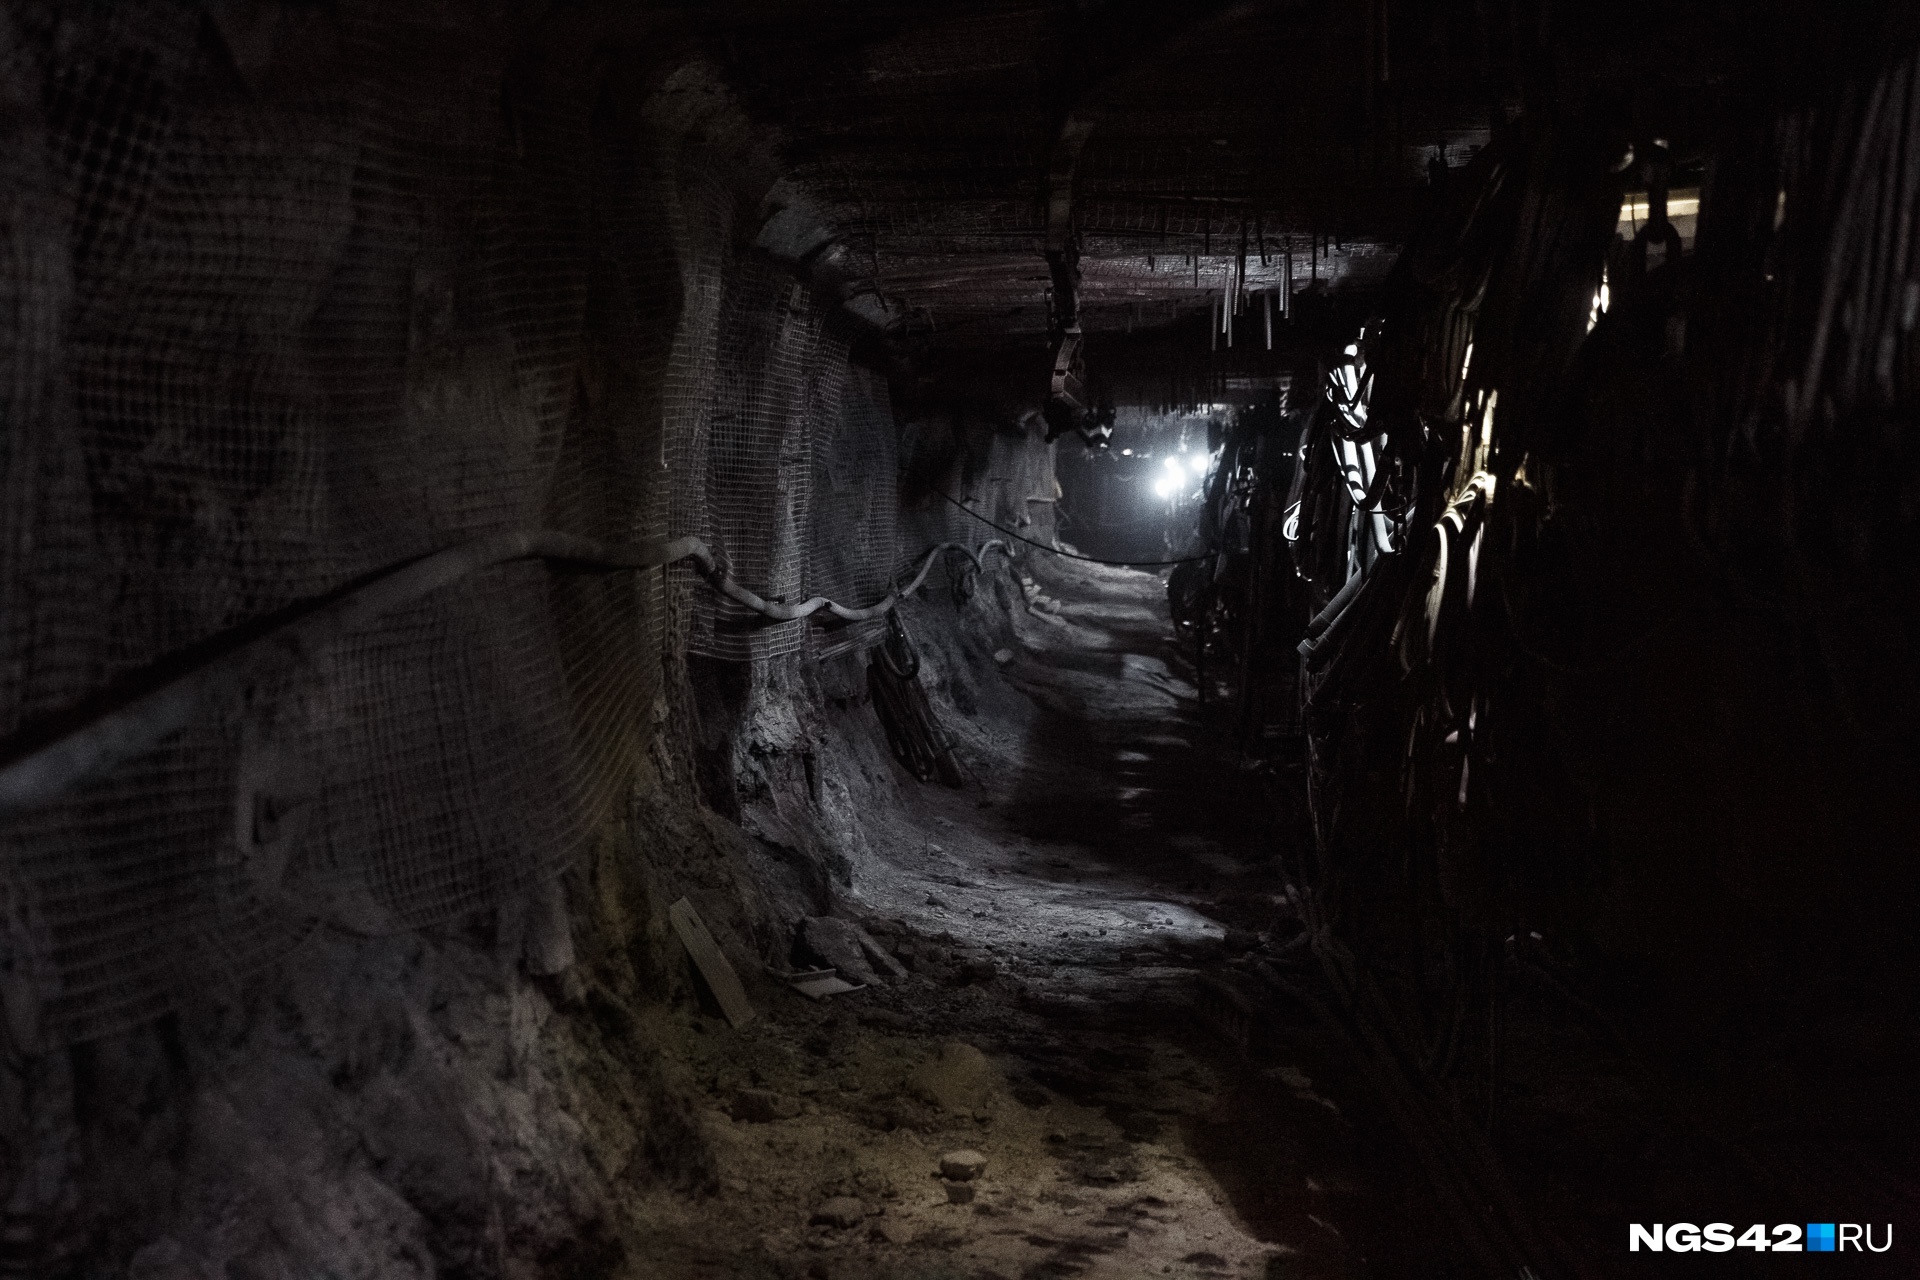 Поиски пропавших после обрушения на шахте горняков продолжаются: комментарий властей Кузбасса